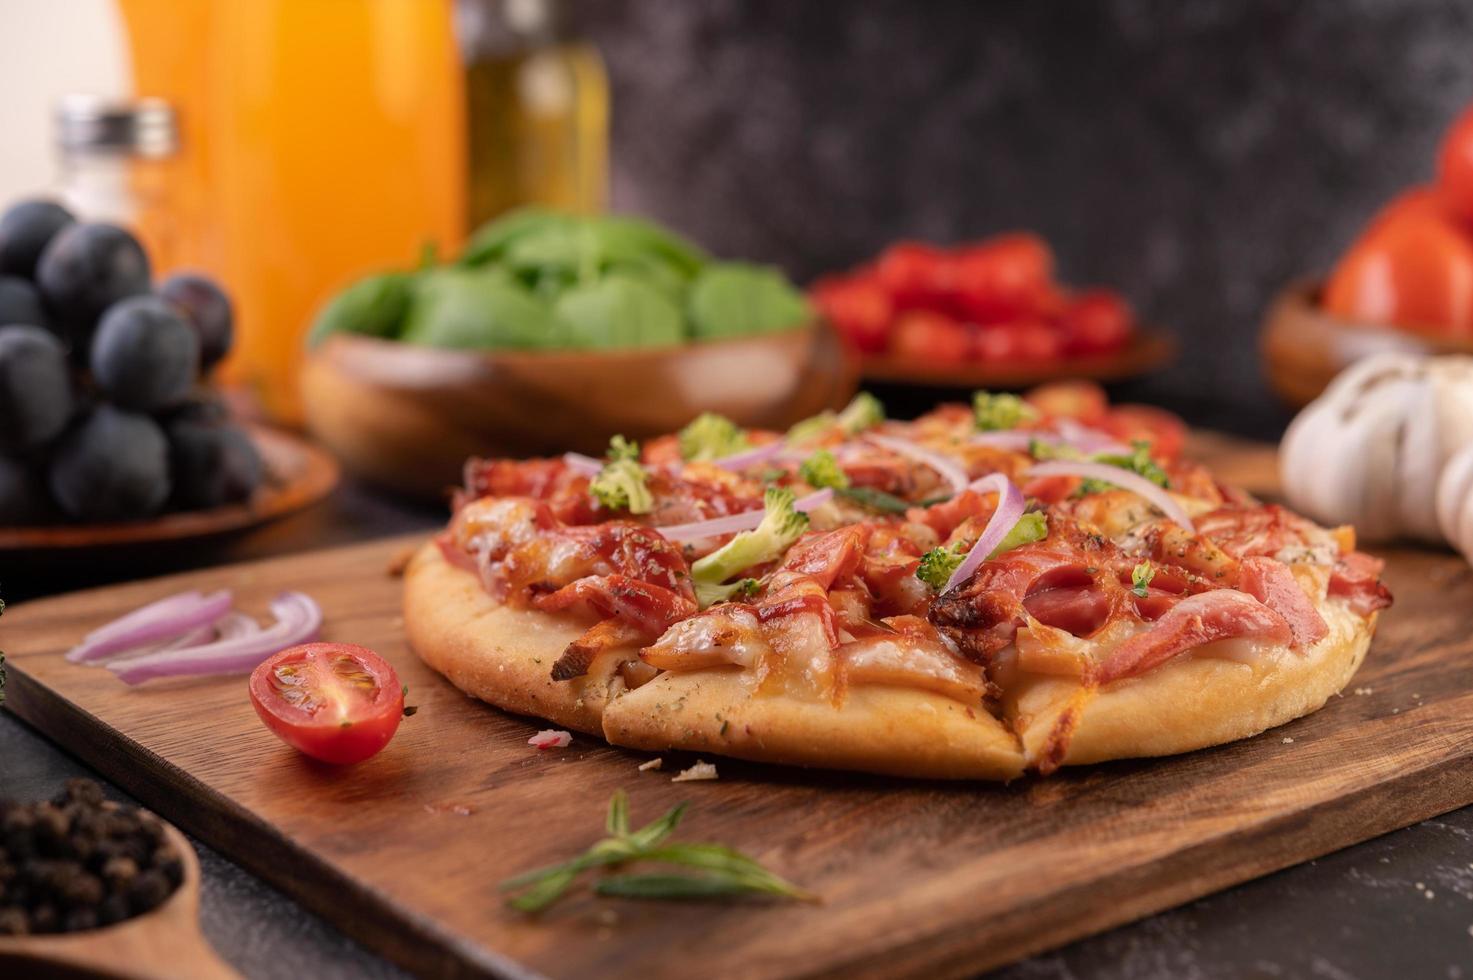 zelfgemaakte pizza met ingrediënten foto